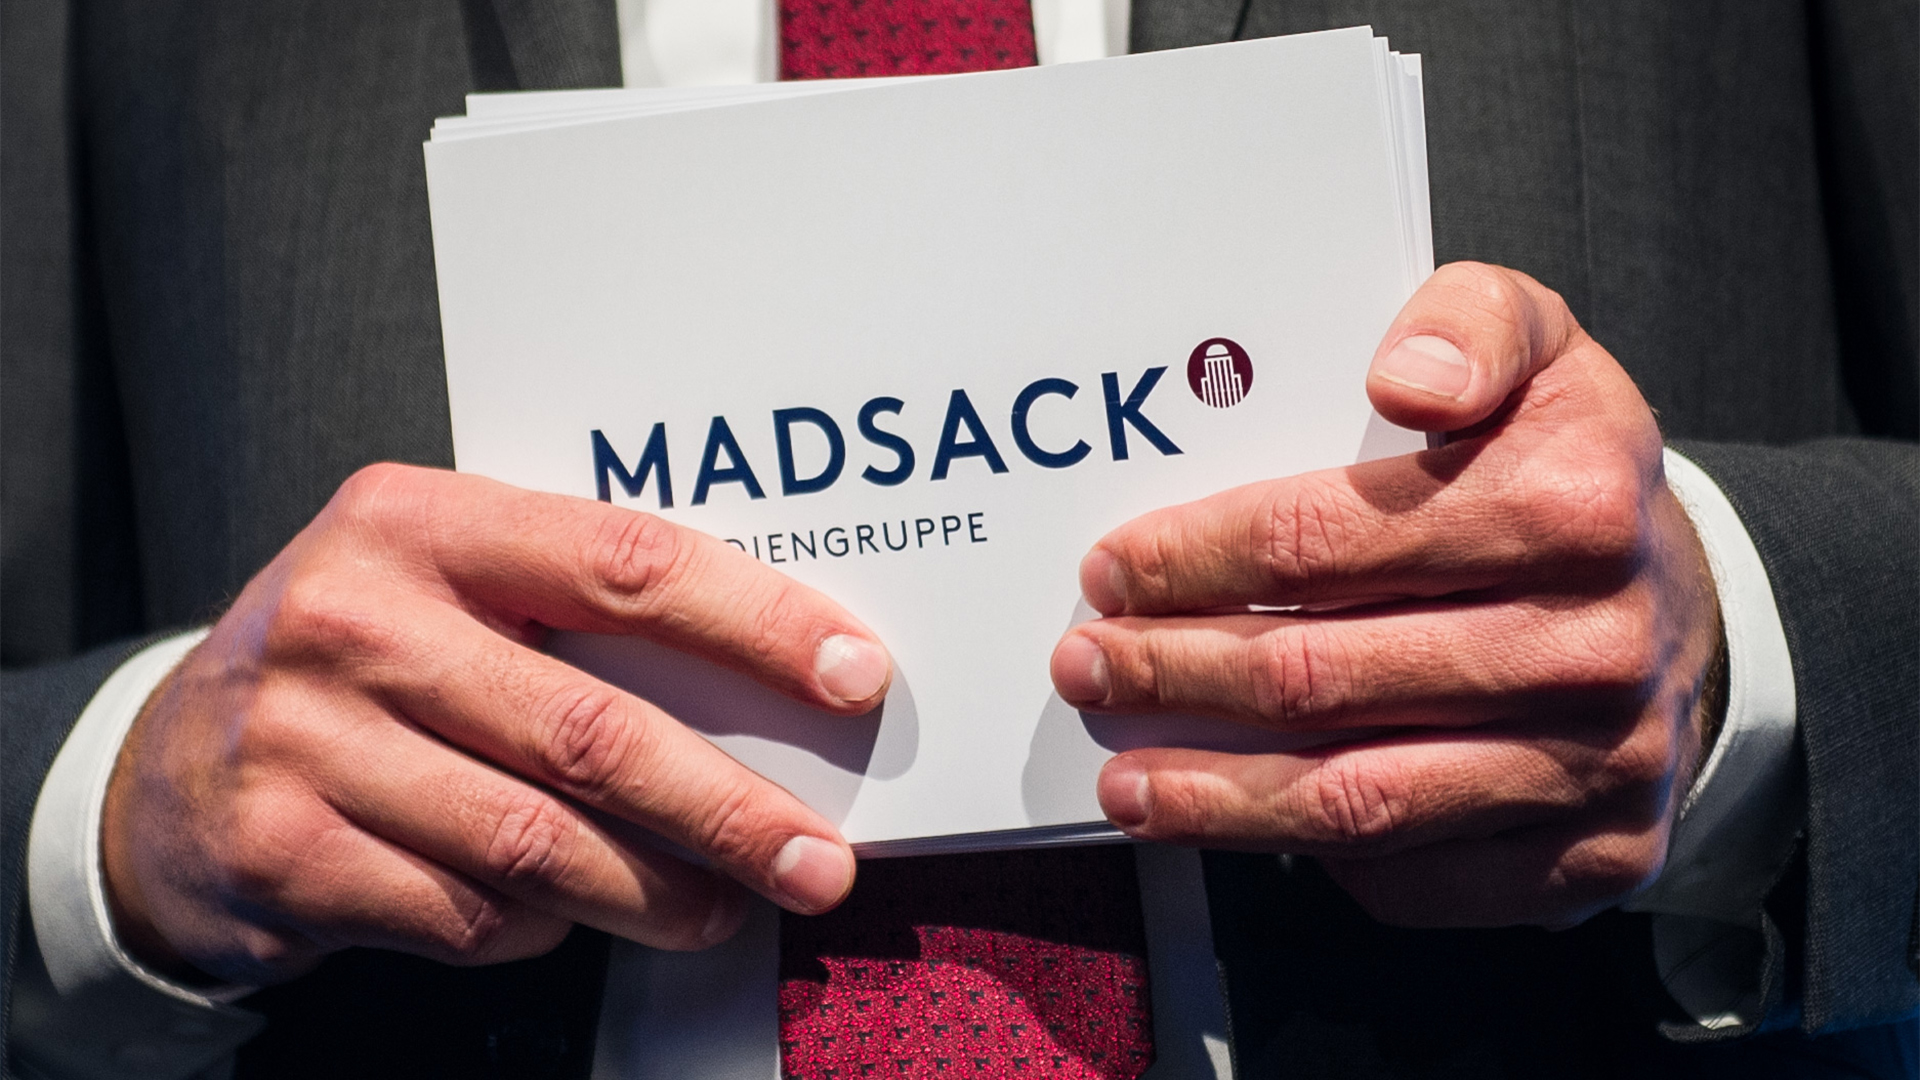 Thomas Düffert hält Moderationskarten mit der Aufschrift "Madsack" in den Händen (Archivbild 18.11.2014) | dpa